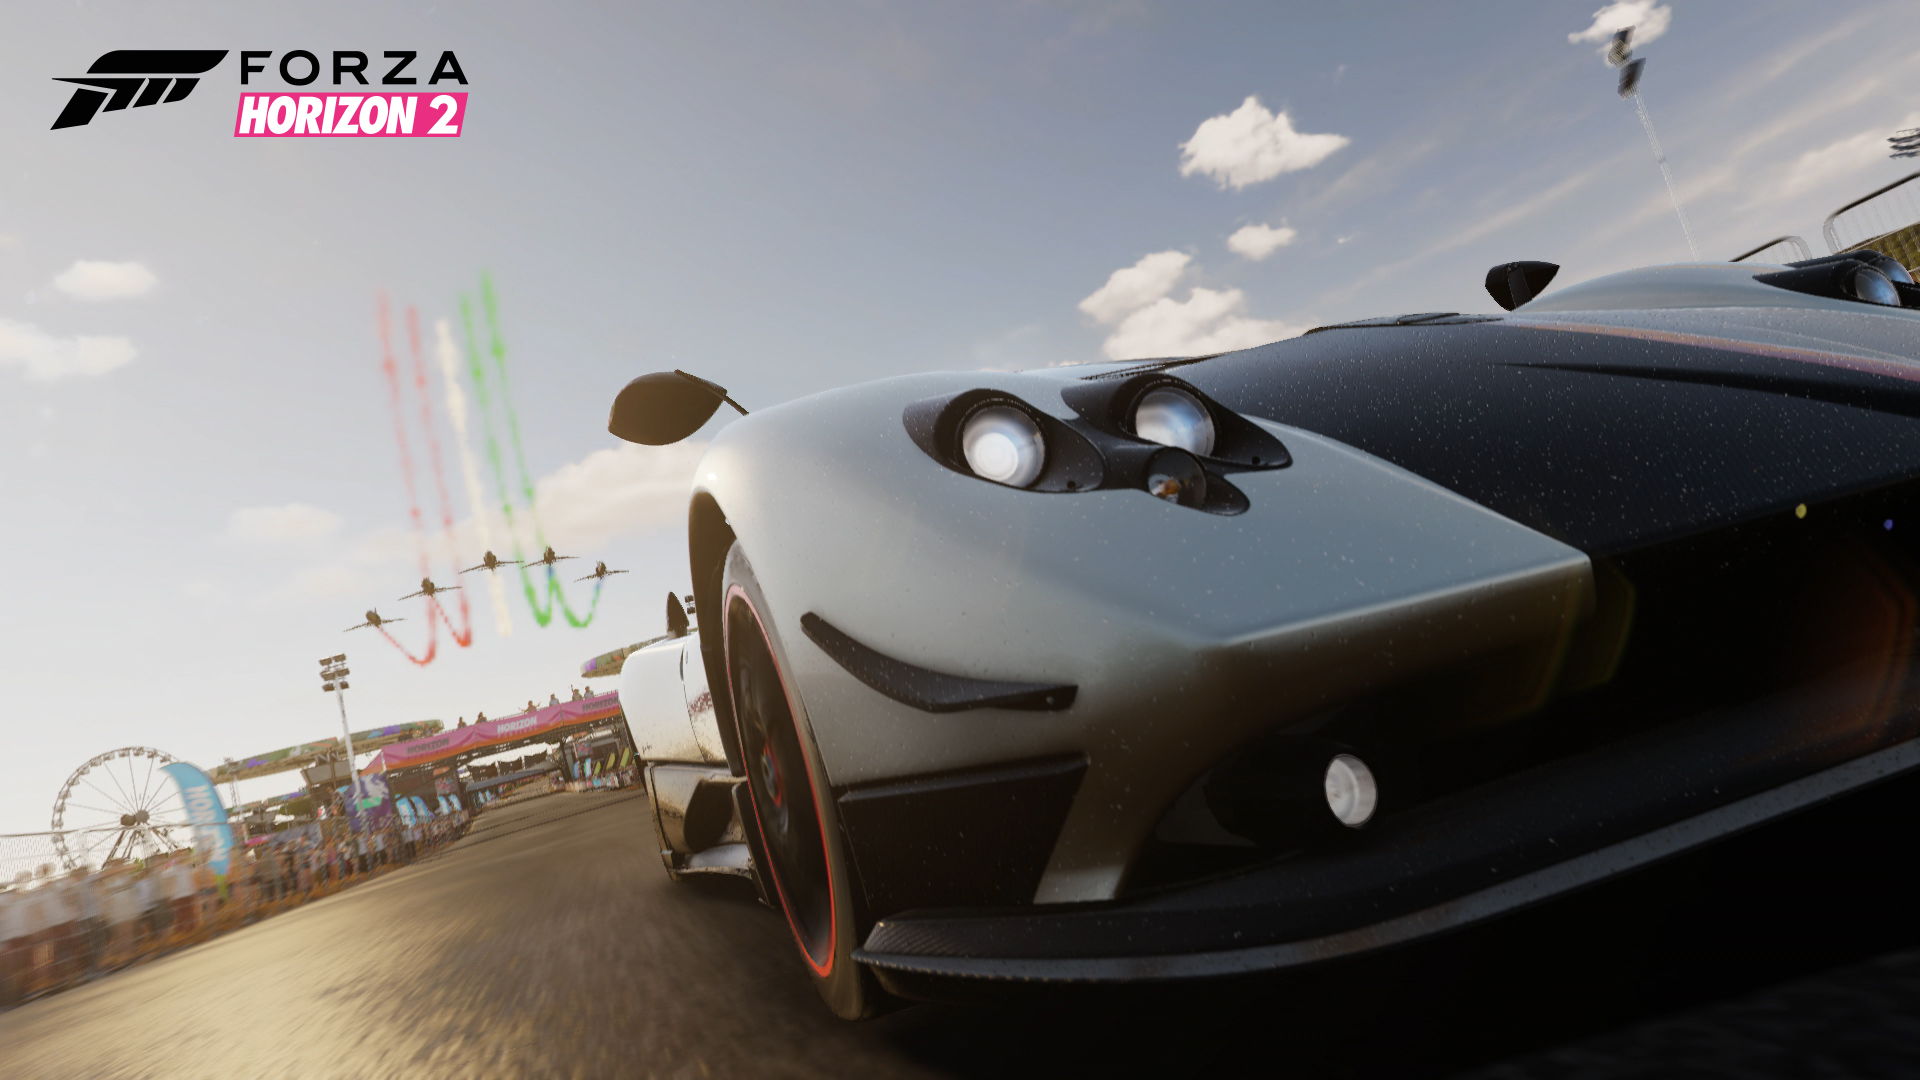 Festiwal Horizon, Tydzień z Forza Horizon 2: Atrakcje dla pojedynczego gracza